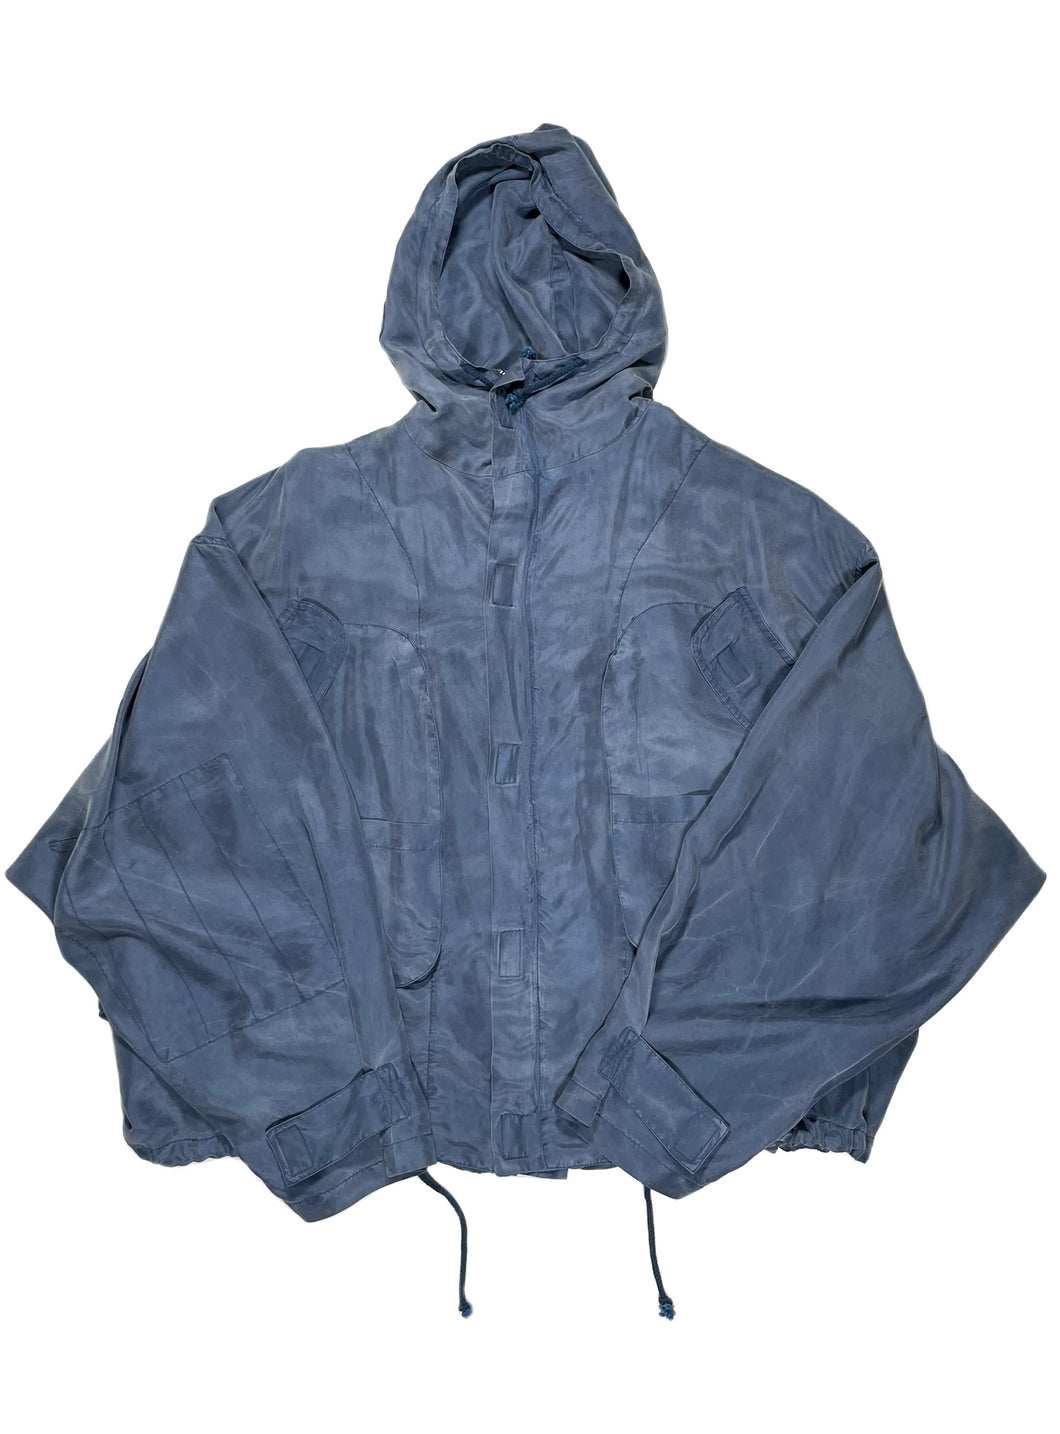 1990’s Katharine Hamnett cargo bomber jacket in silk